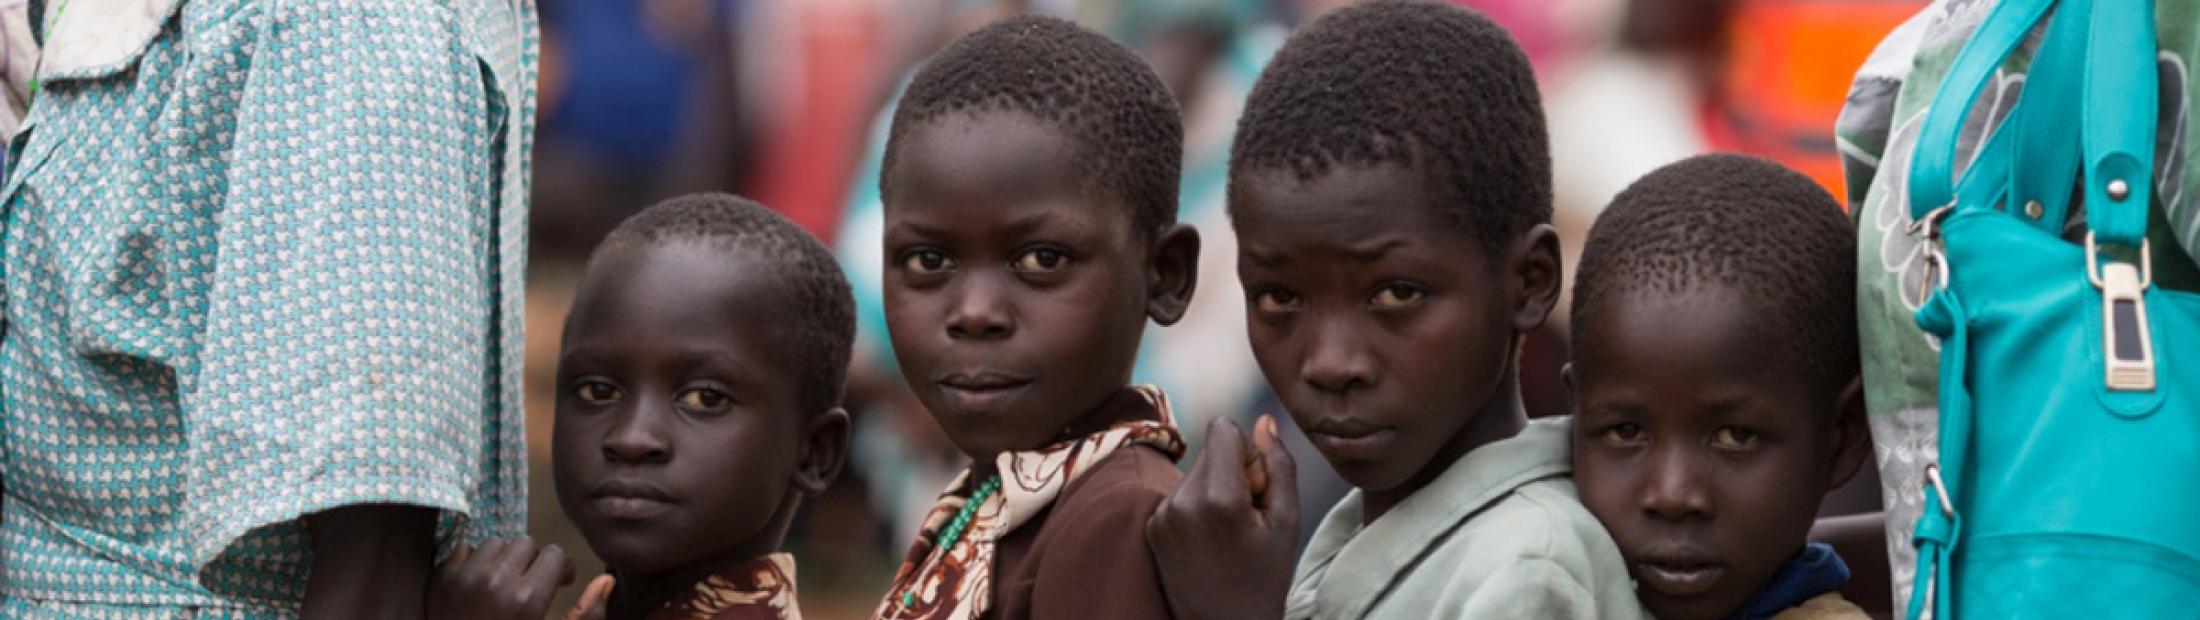 Más de 35.000 personas huyen de Sudán del Sur a Uganda a causa de la violencia